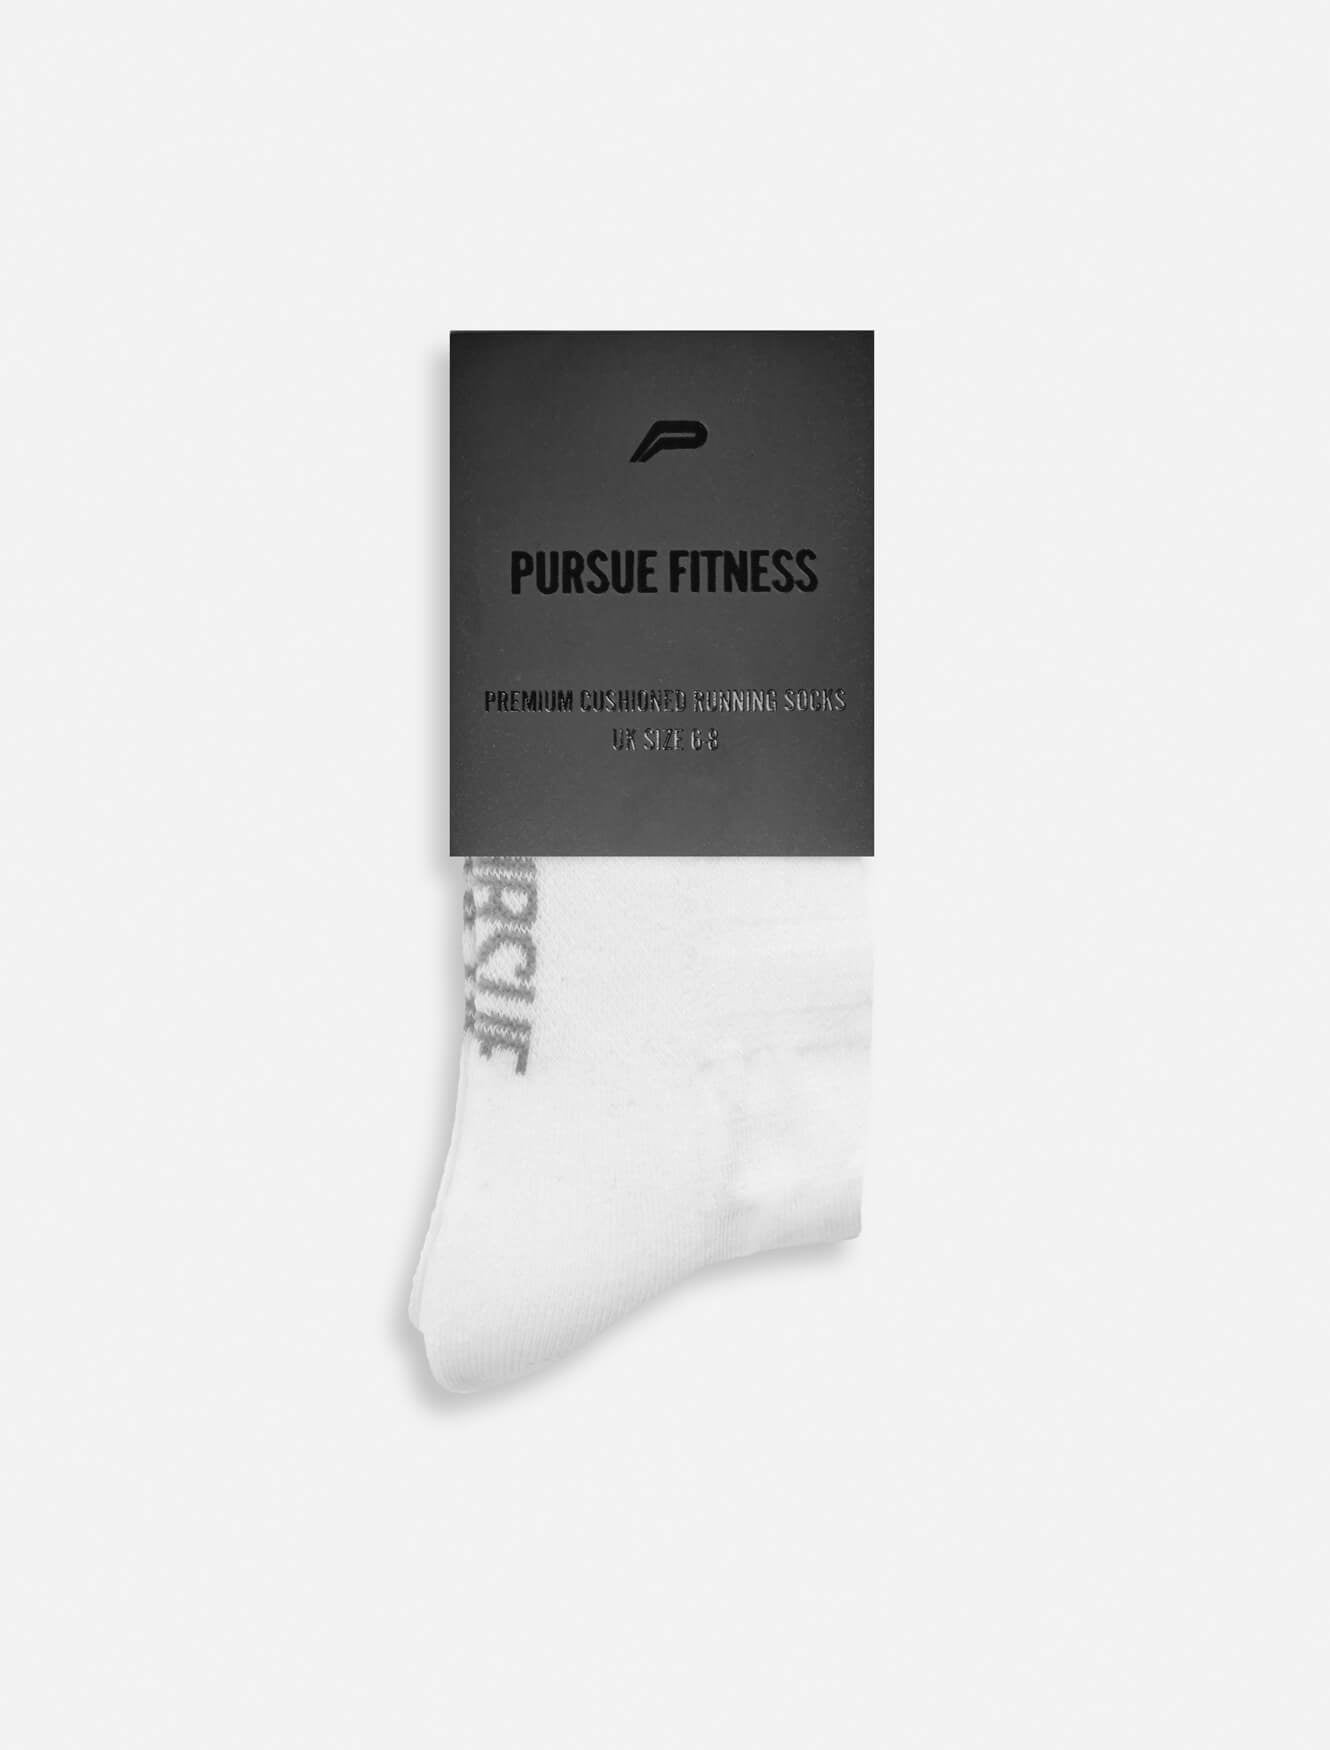 Premium Cushioned Running Socks / White Pursue Fitness 5